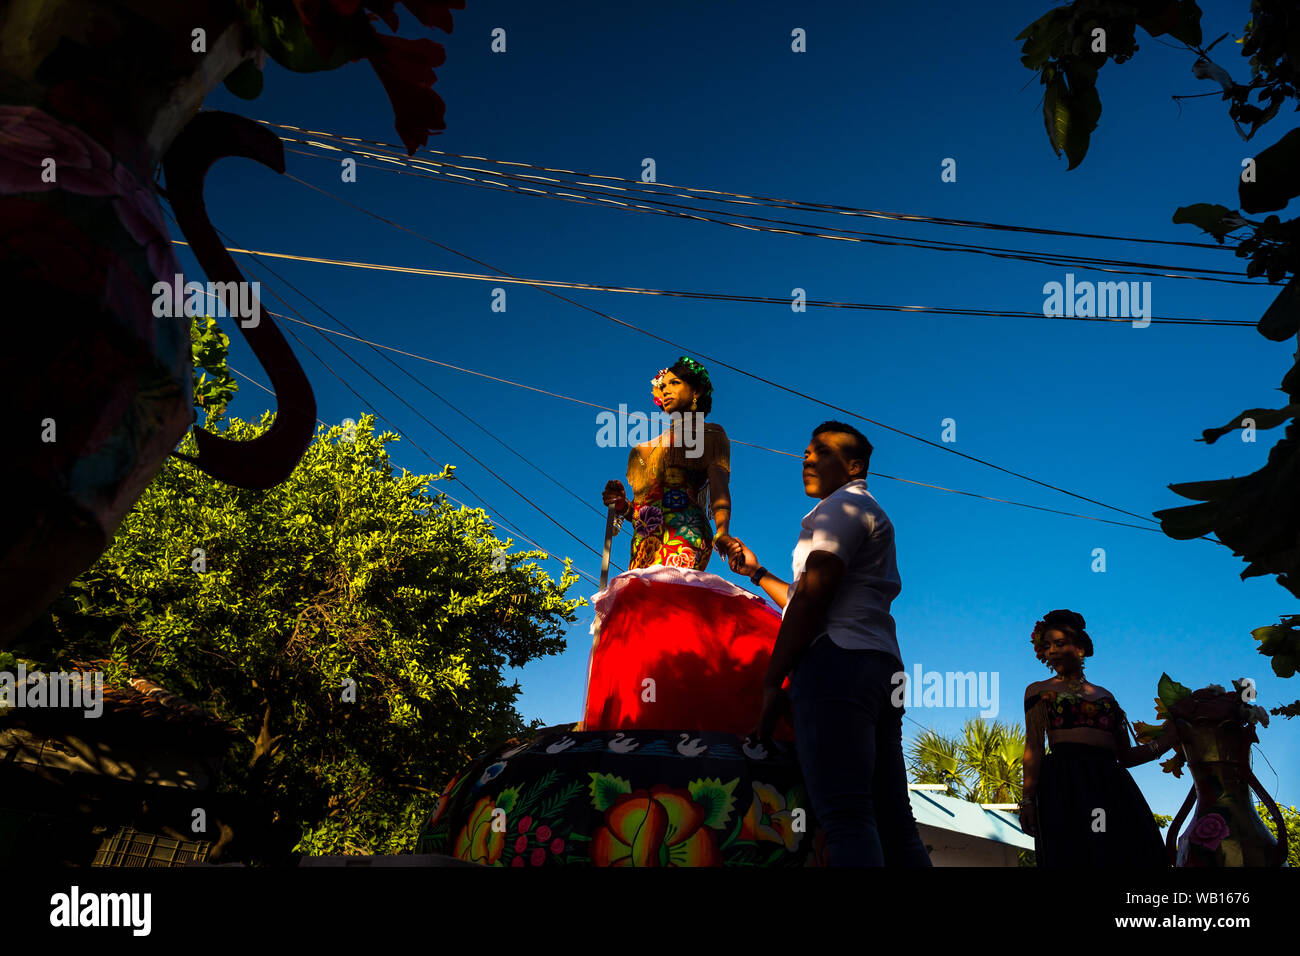 Un Mexicain "muxe" (typiquement, un homosexuel homme portant les vêtements féminins) effectue sur un flotteur pendant le festival à Juchitán de Zaragoza, Mexique. Banque D'Images